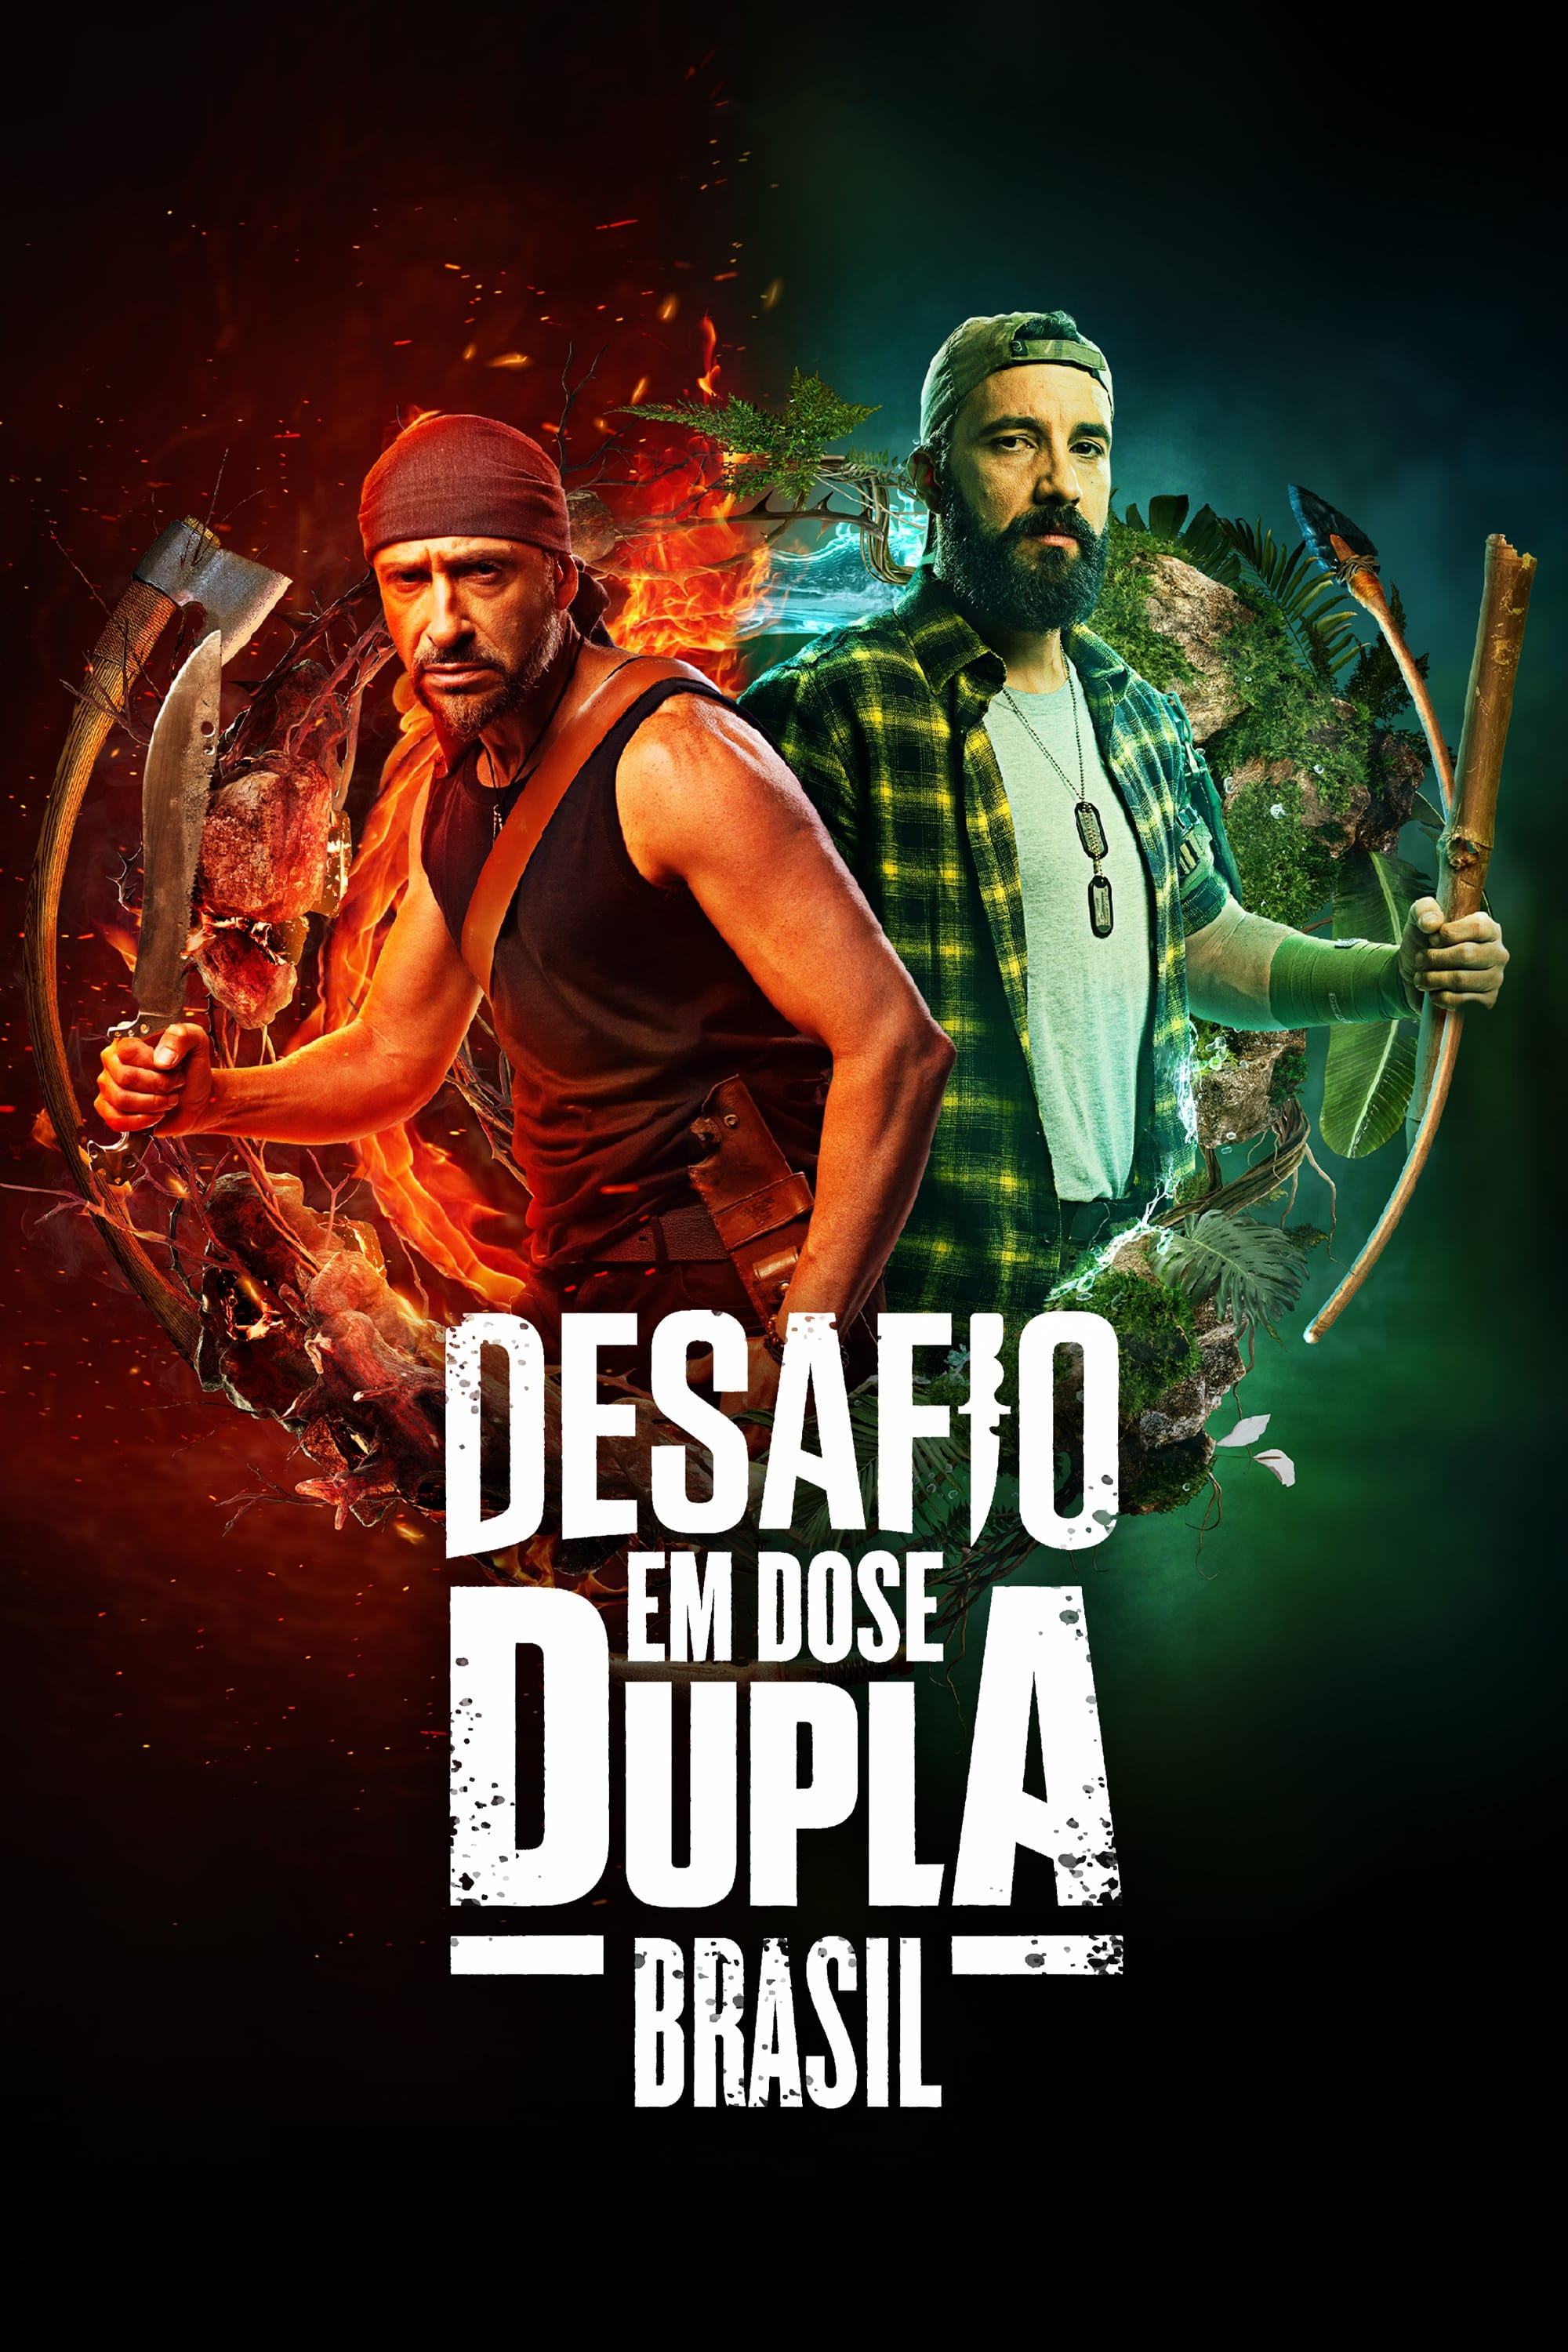 TV ratings for Dual Survival Brazil (Desafio Em Dose Dupla Brasil) in Brasil. Discovery+ TV series